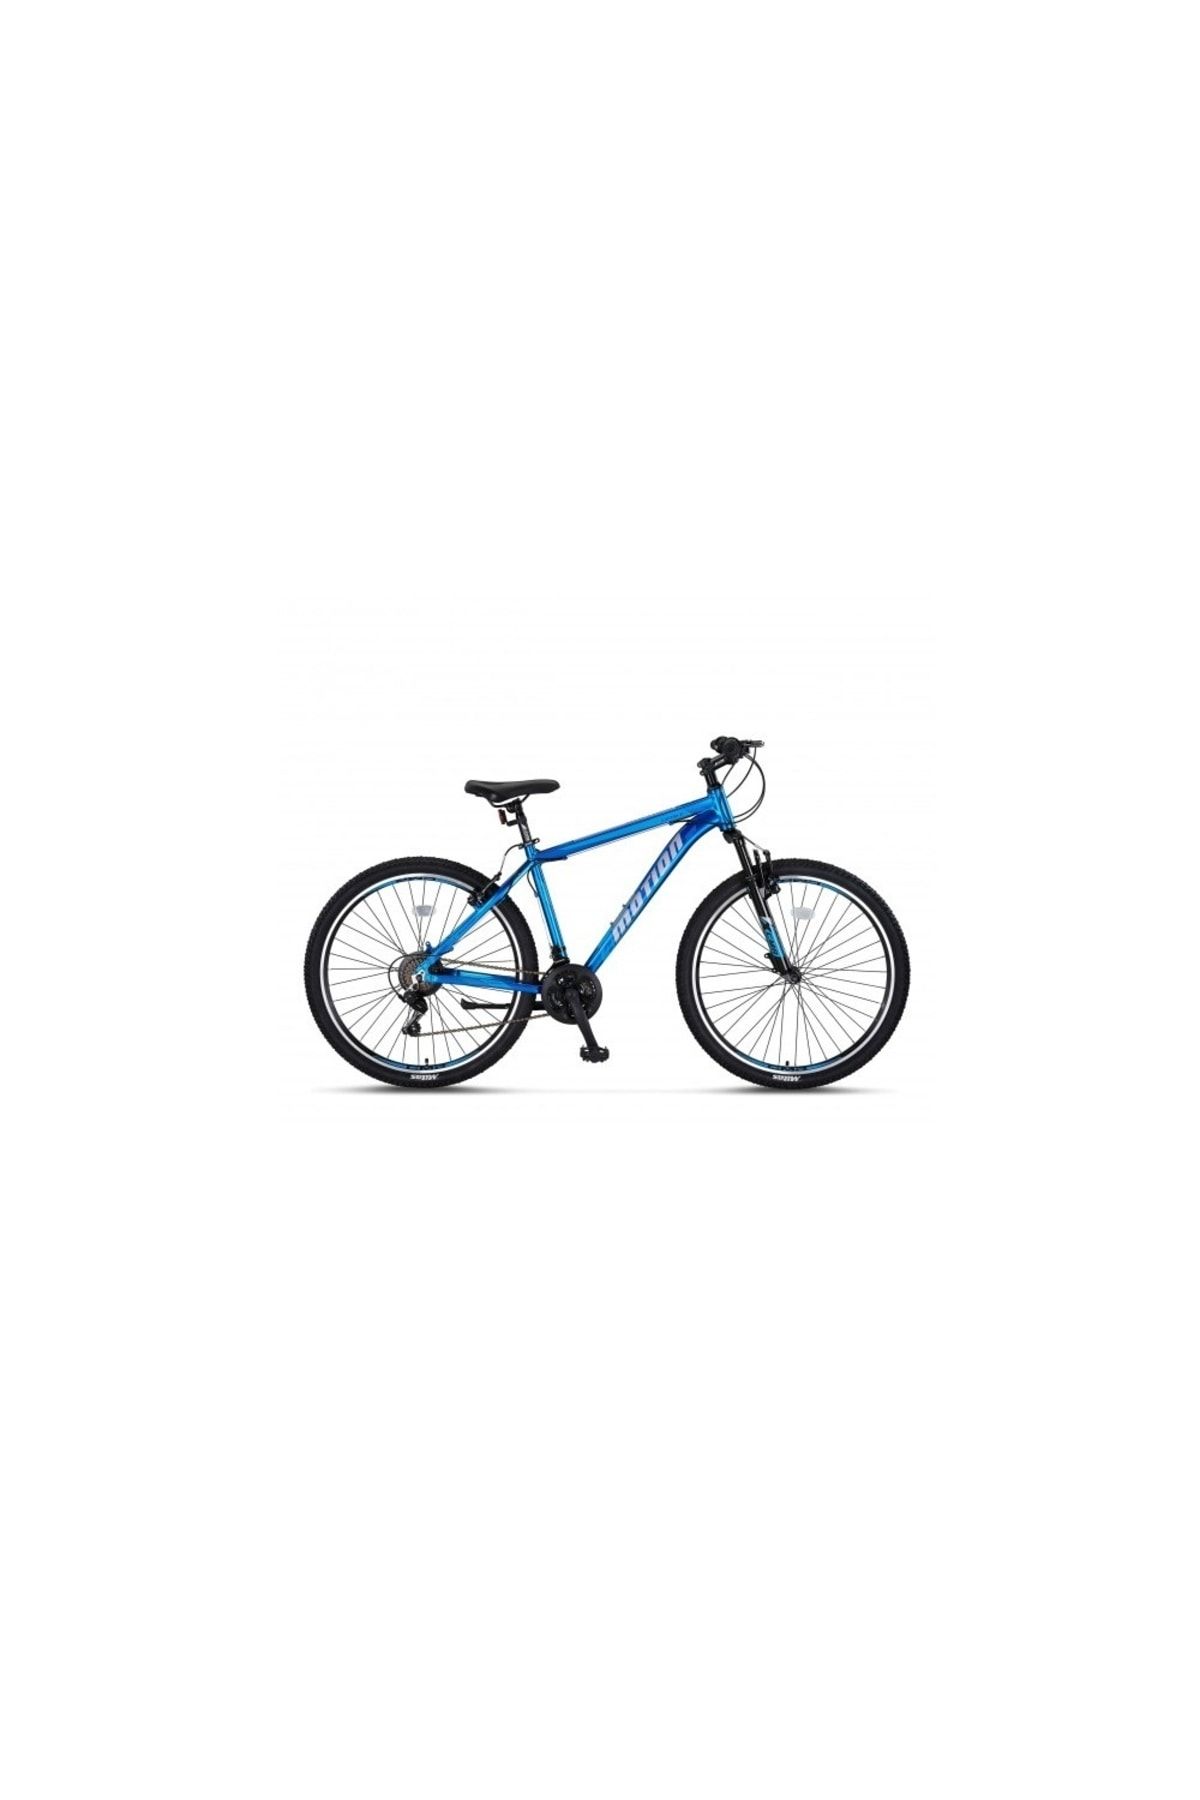 Ümit Bisiklet Ümit Motion 29 Jant 18 K V Fren Dağ Bisikleti Dark Blue